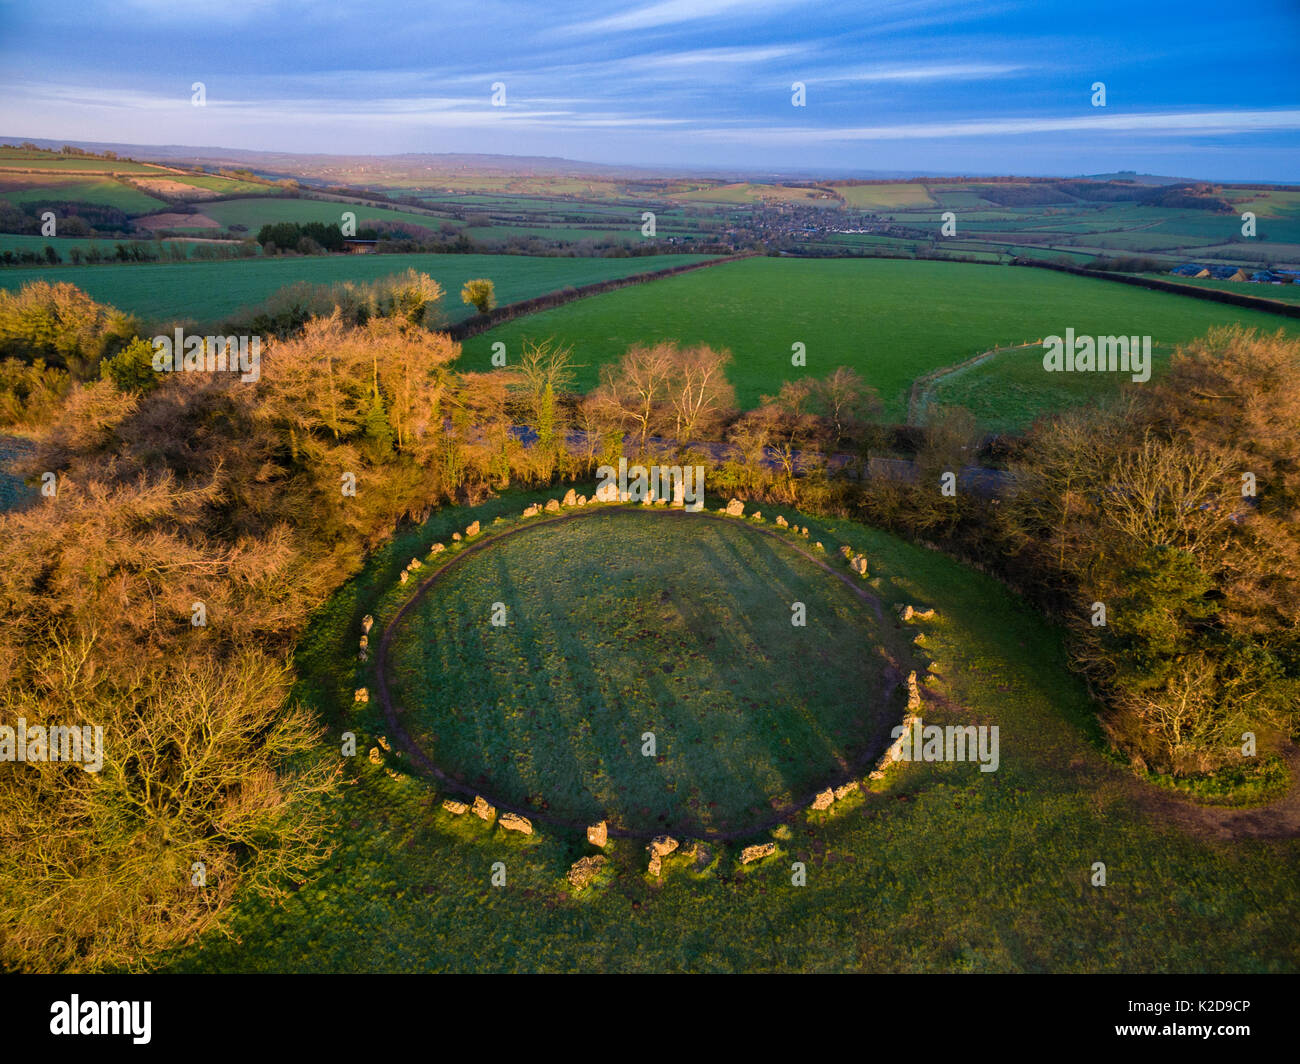 Vue aérienne de King's Men stone circle, partie de Rollright Stones complexe néolithique. Grand Rollright, Oxfordshire, UK. Janvier 2016. Banque D'Images